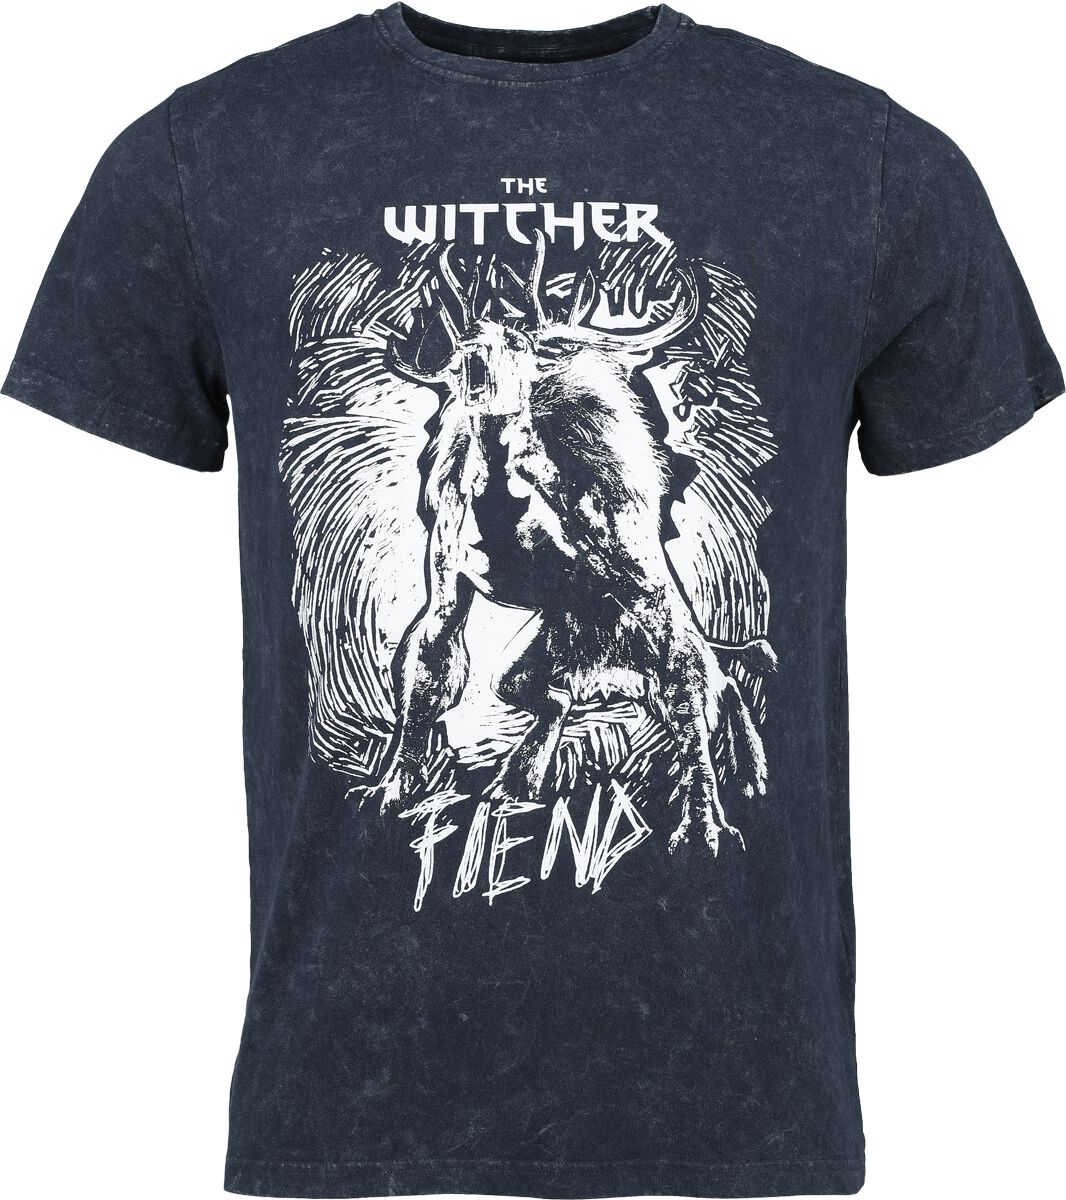 The Witcher - Gaming T-Shirt - Fiend - M bis XXL - für Männer - Größe L - blau